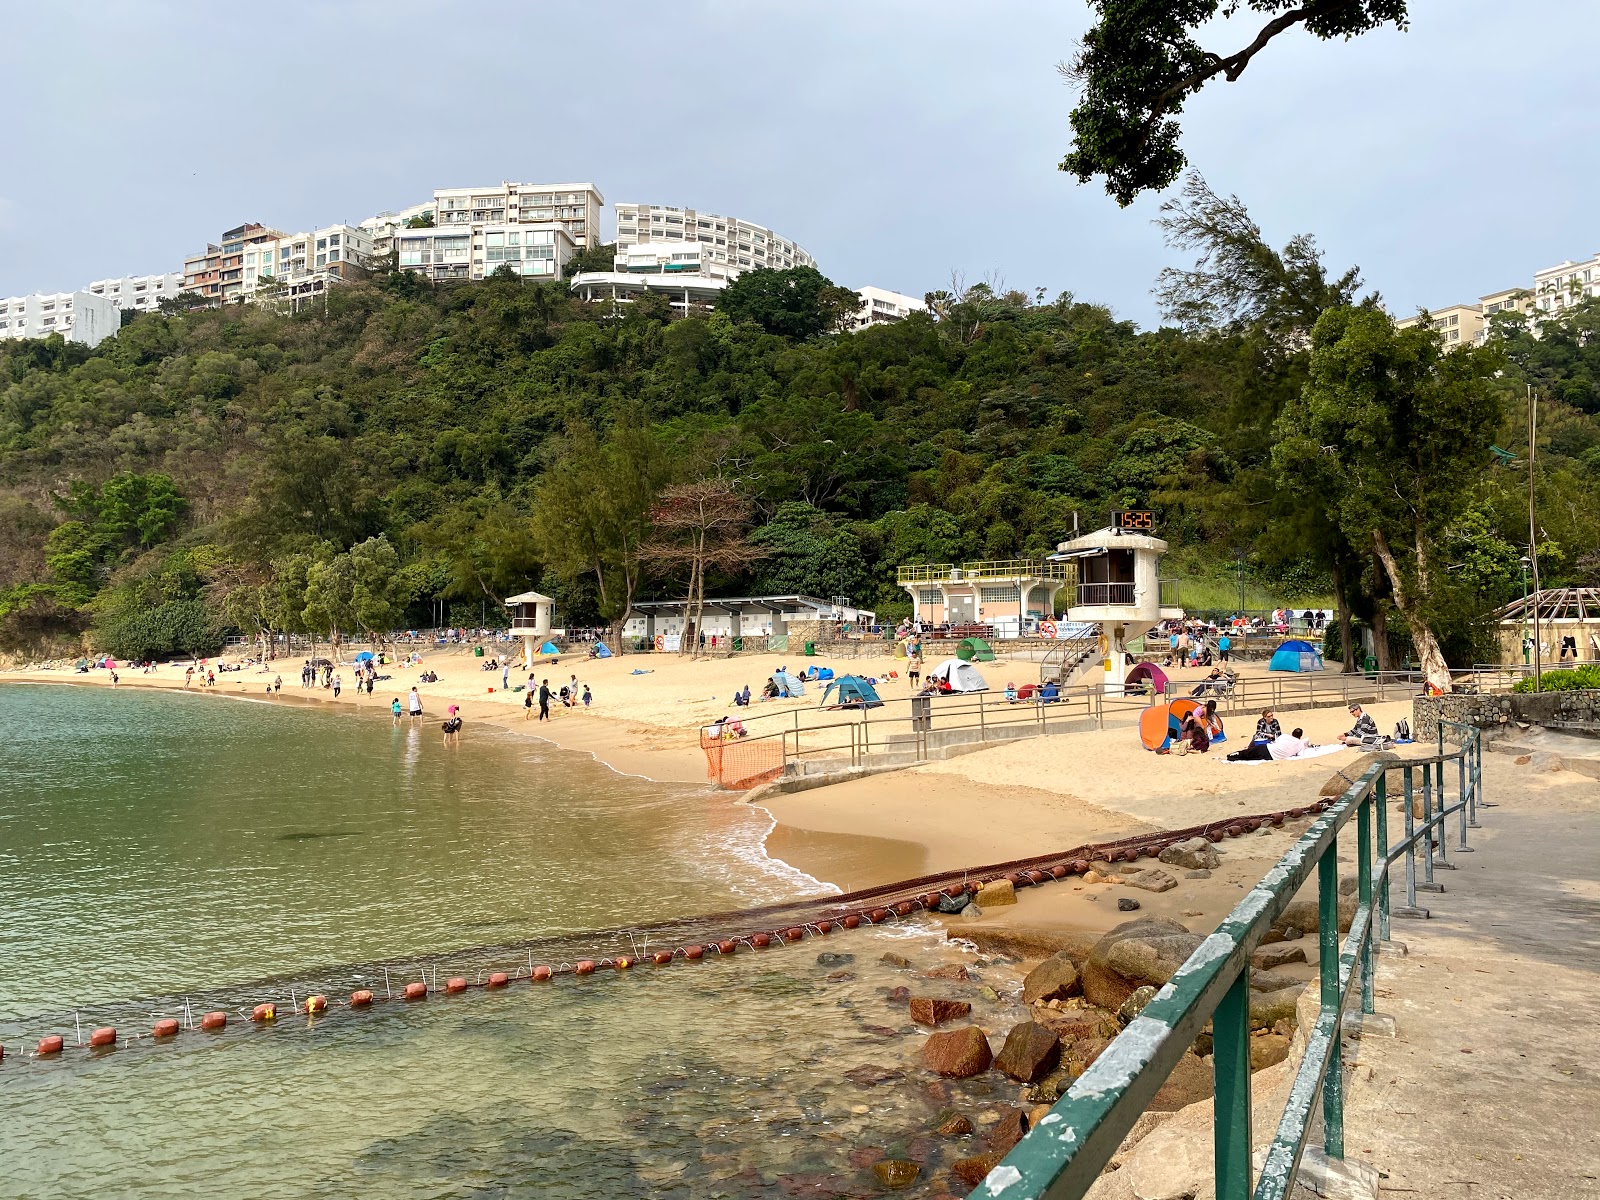 Chung Hom Kok Beach'in fotoğrafı vahşi alan